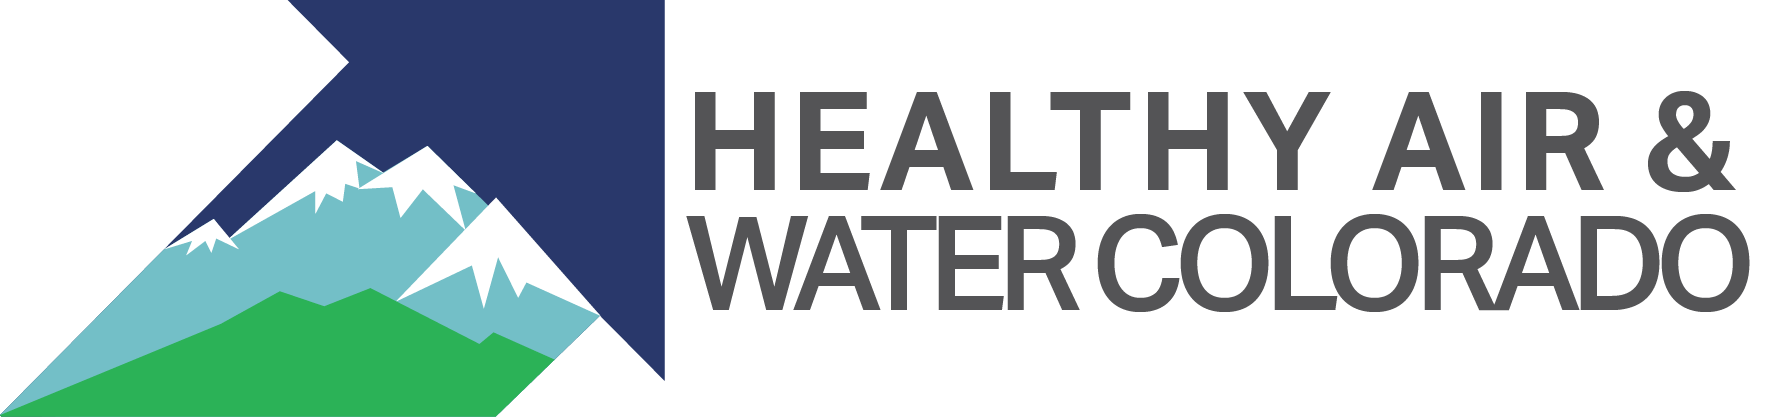 Healthy Air and Water Colorado